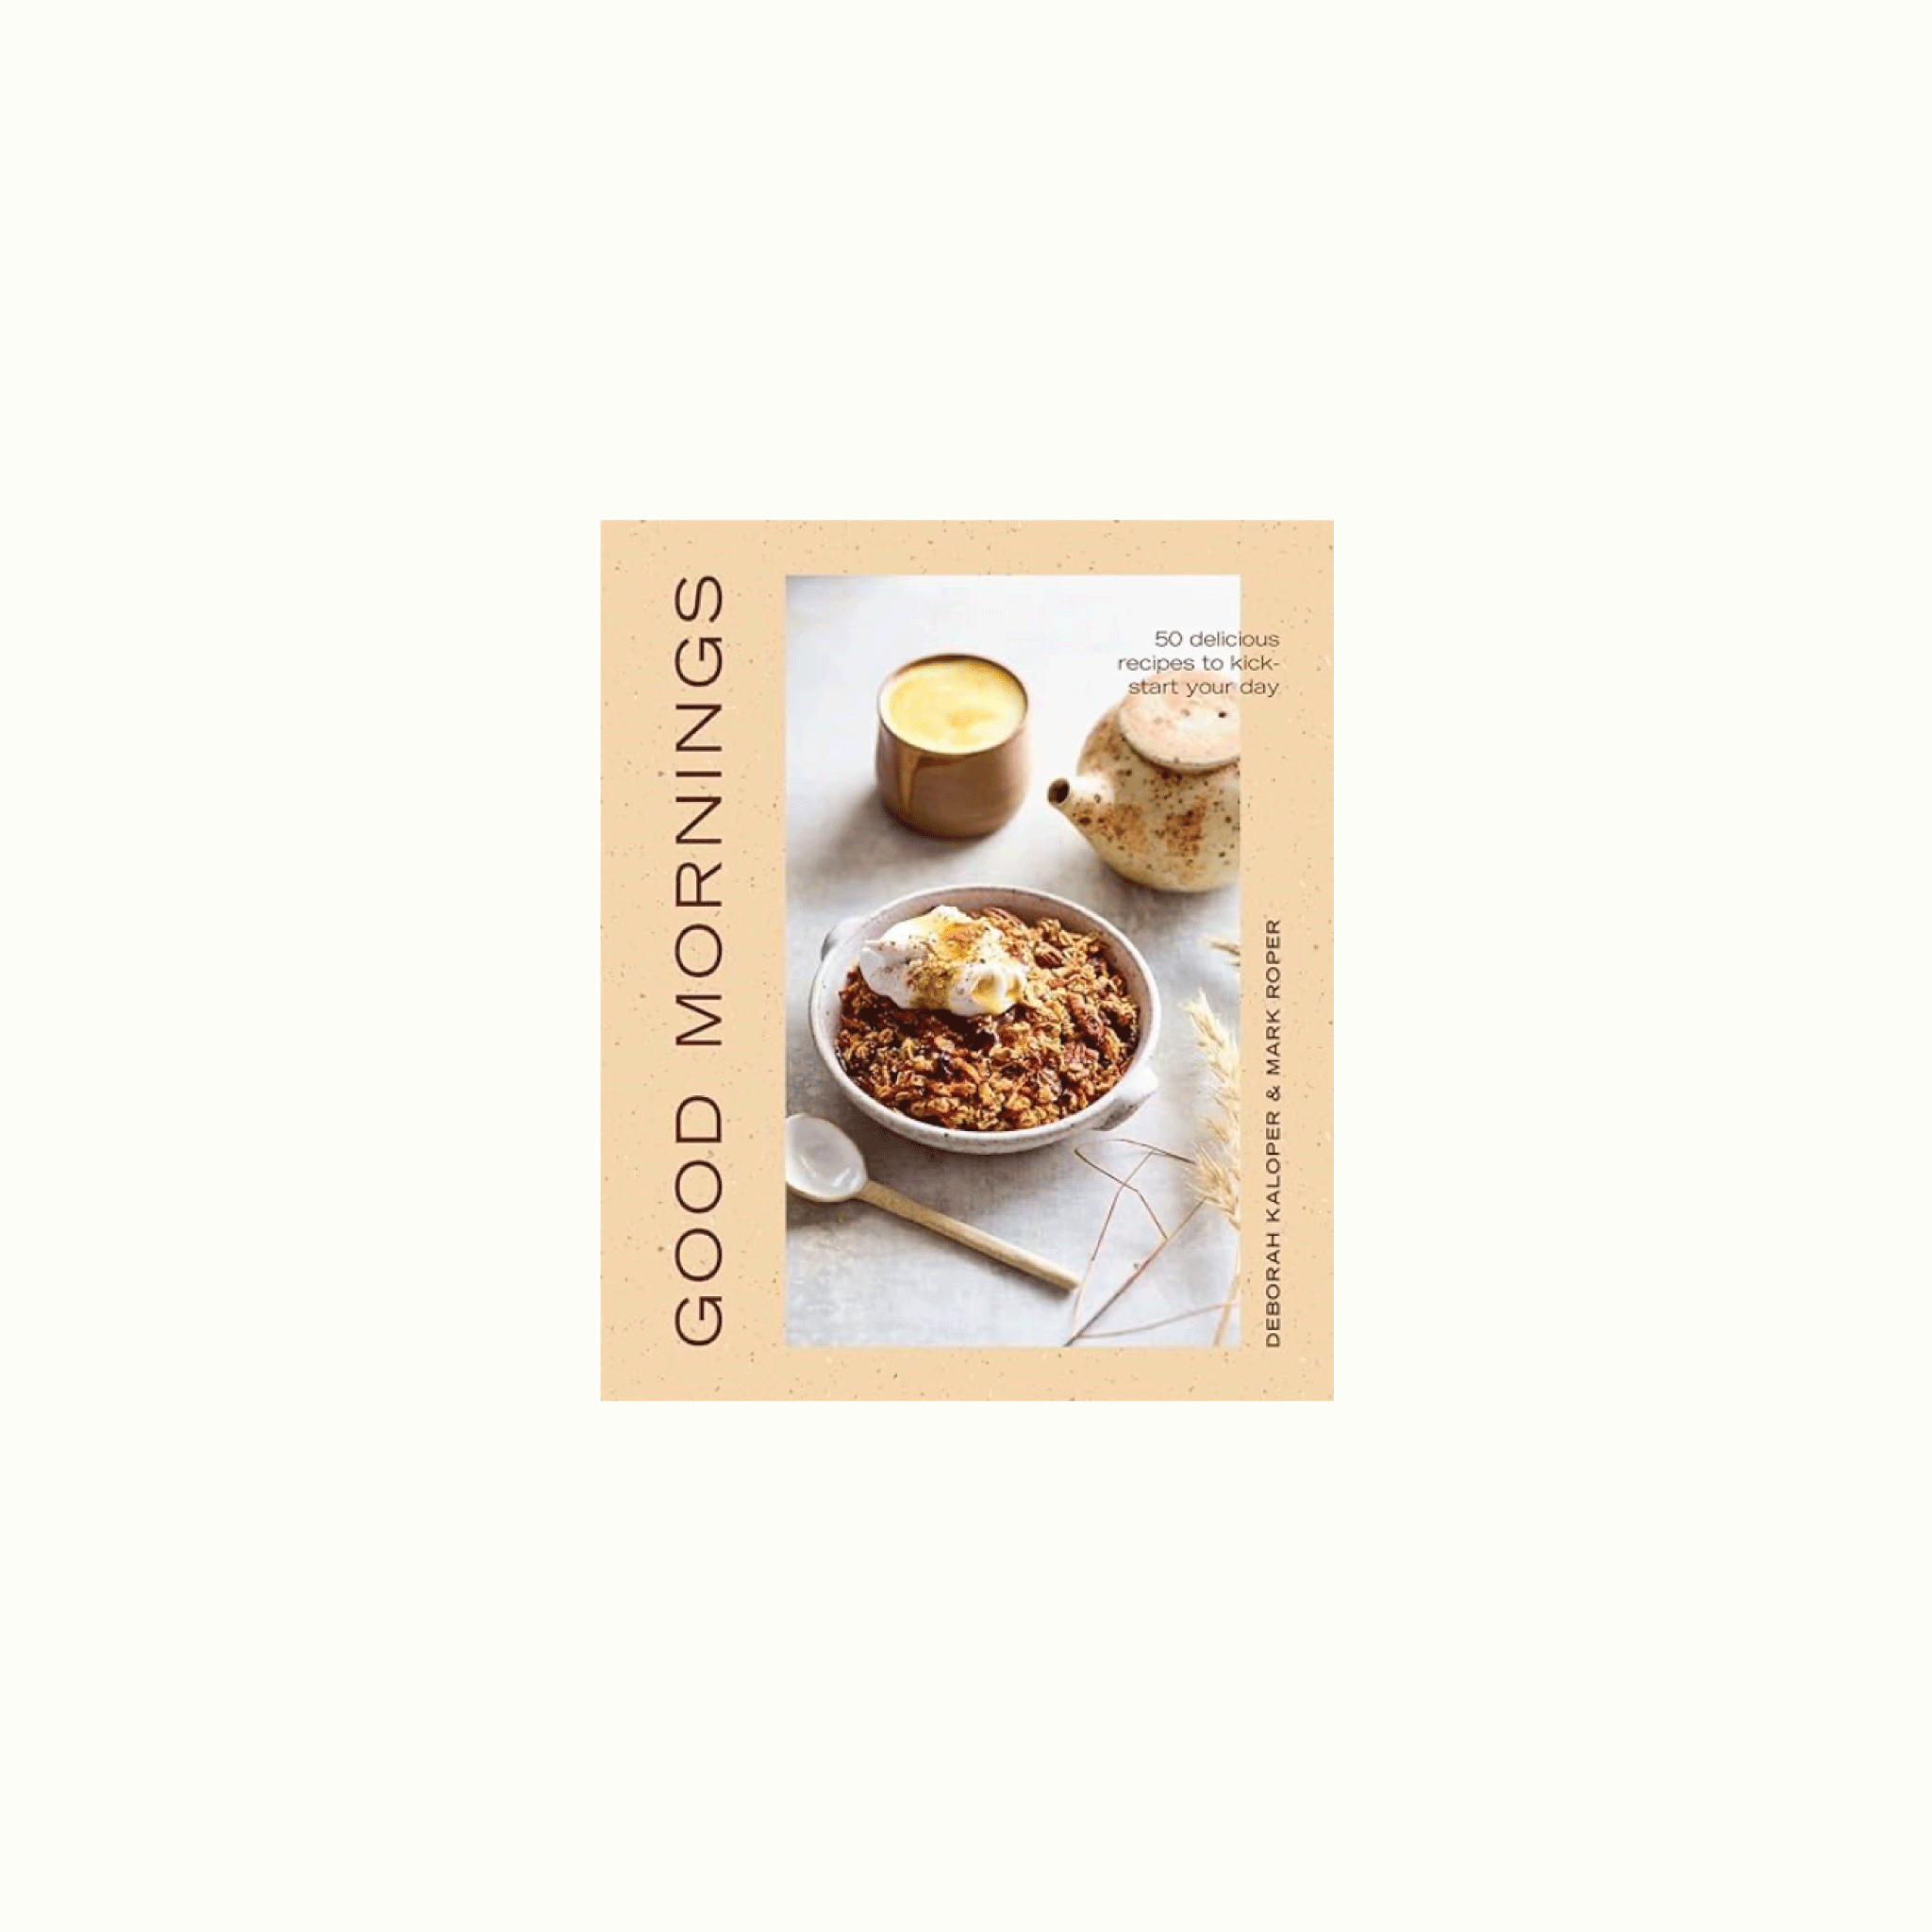 Good Mornings Cookbook Book by Deborah Kaloper for Farmhouse Paso by Nomada Deco